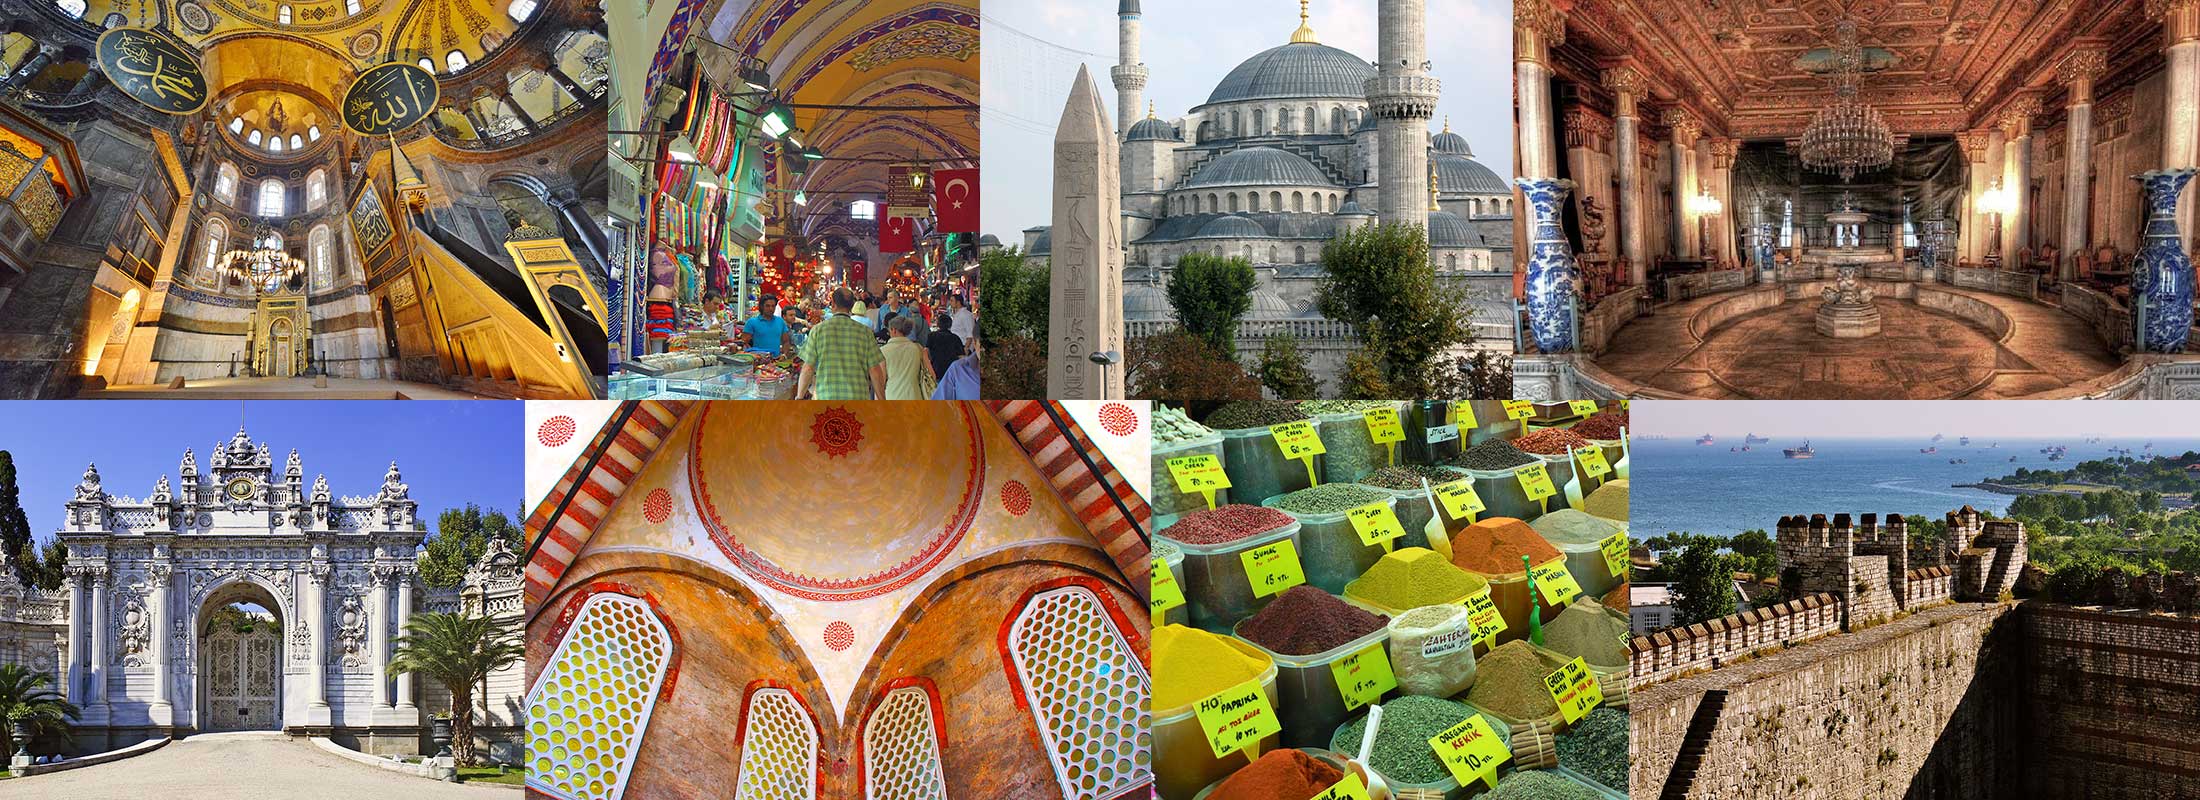 classic-istanbul-tours-blue-mosque-hagia-sophia-museum-topkapi-palace